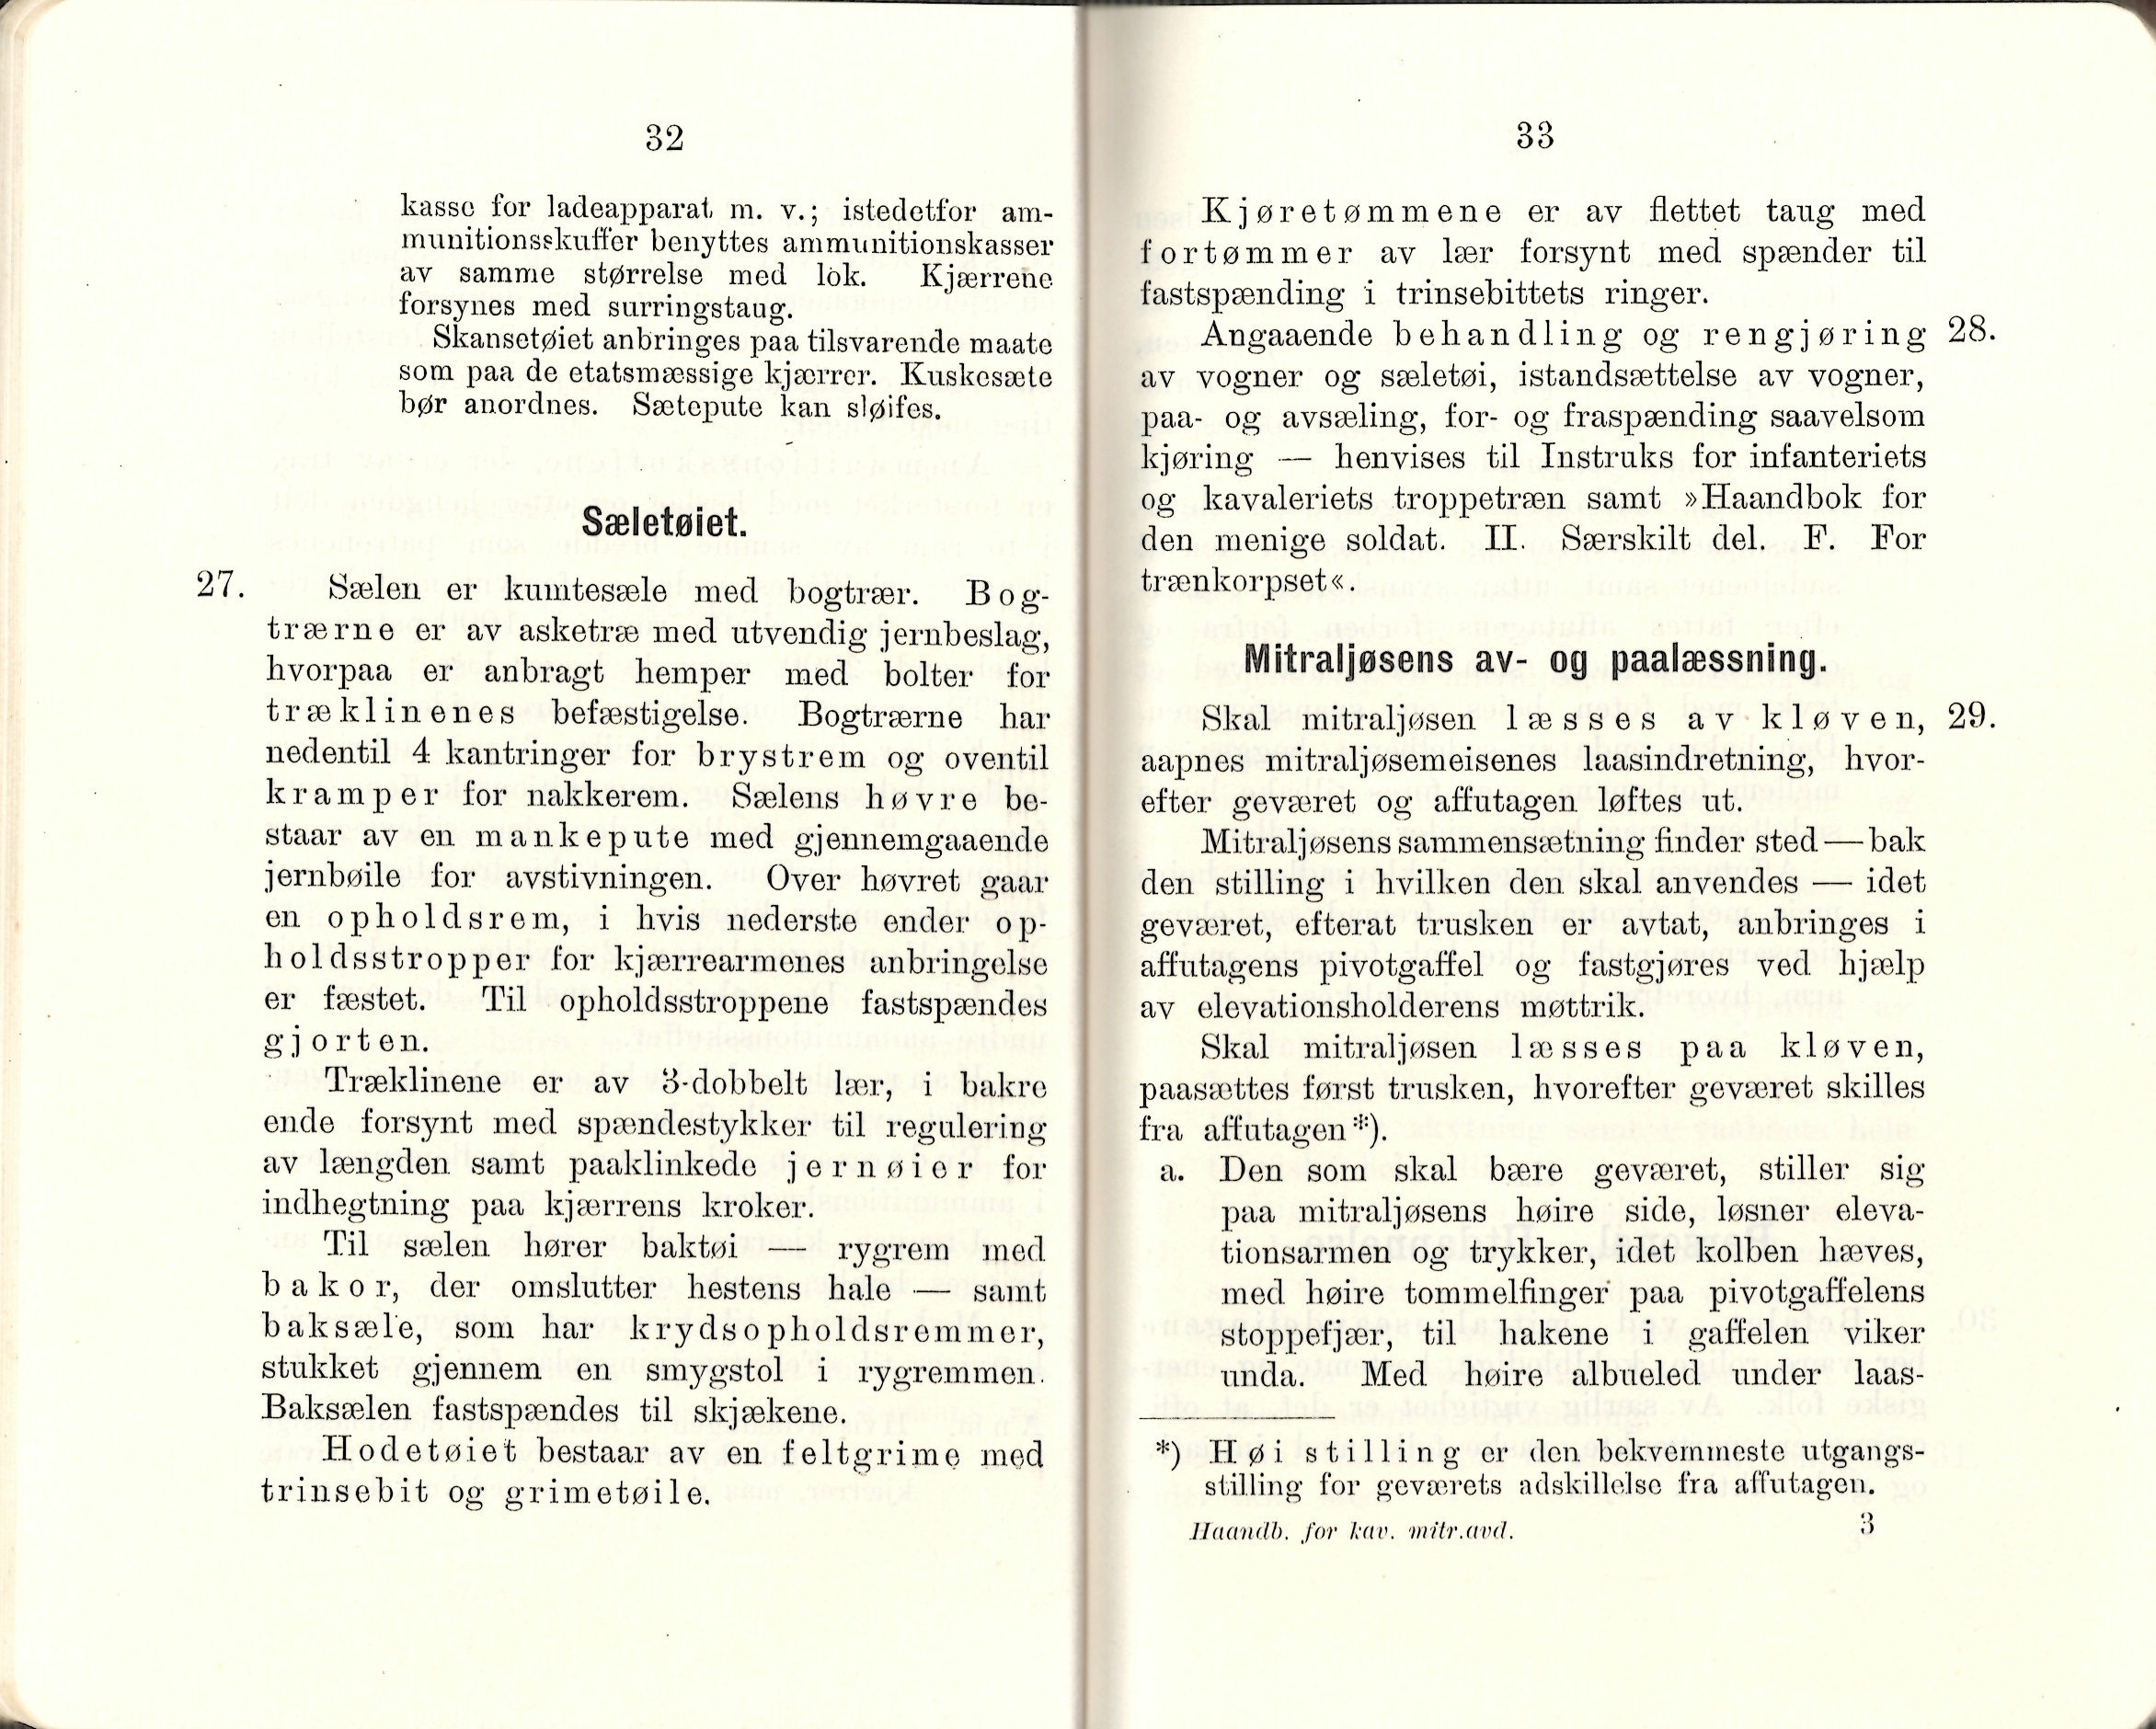 ./doc/reglement/Kav1910/Haandbok-Kav-Mitr-1910-18.jpg